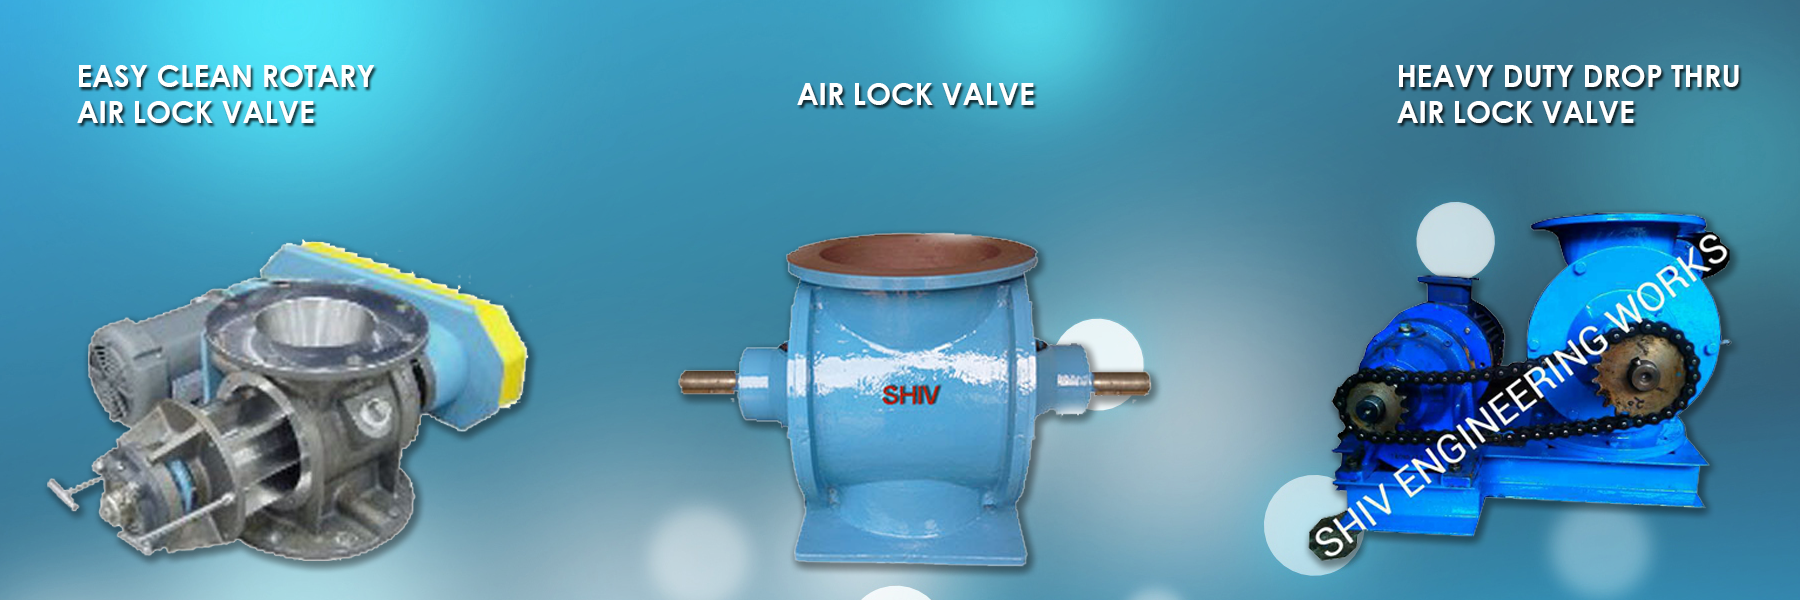 Airlock valve Manufacturers